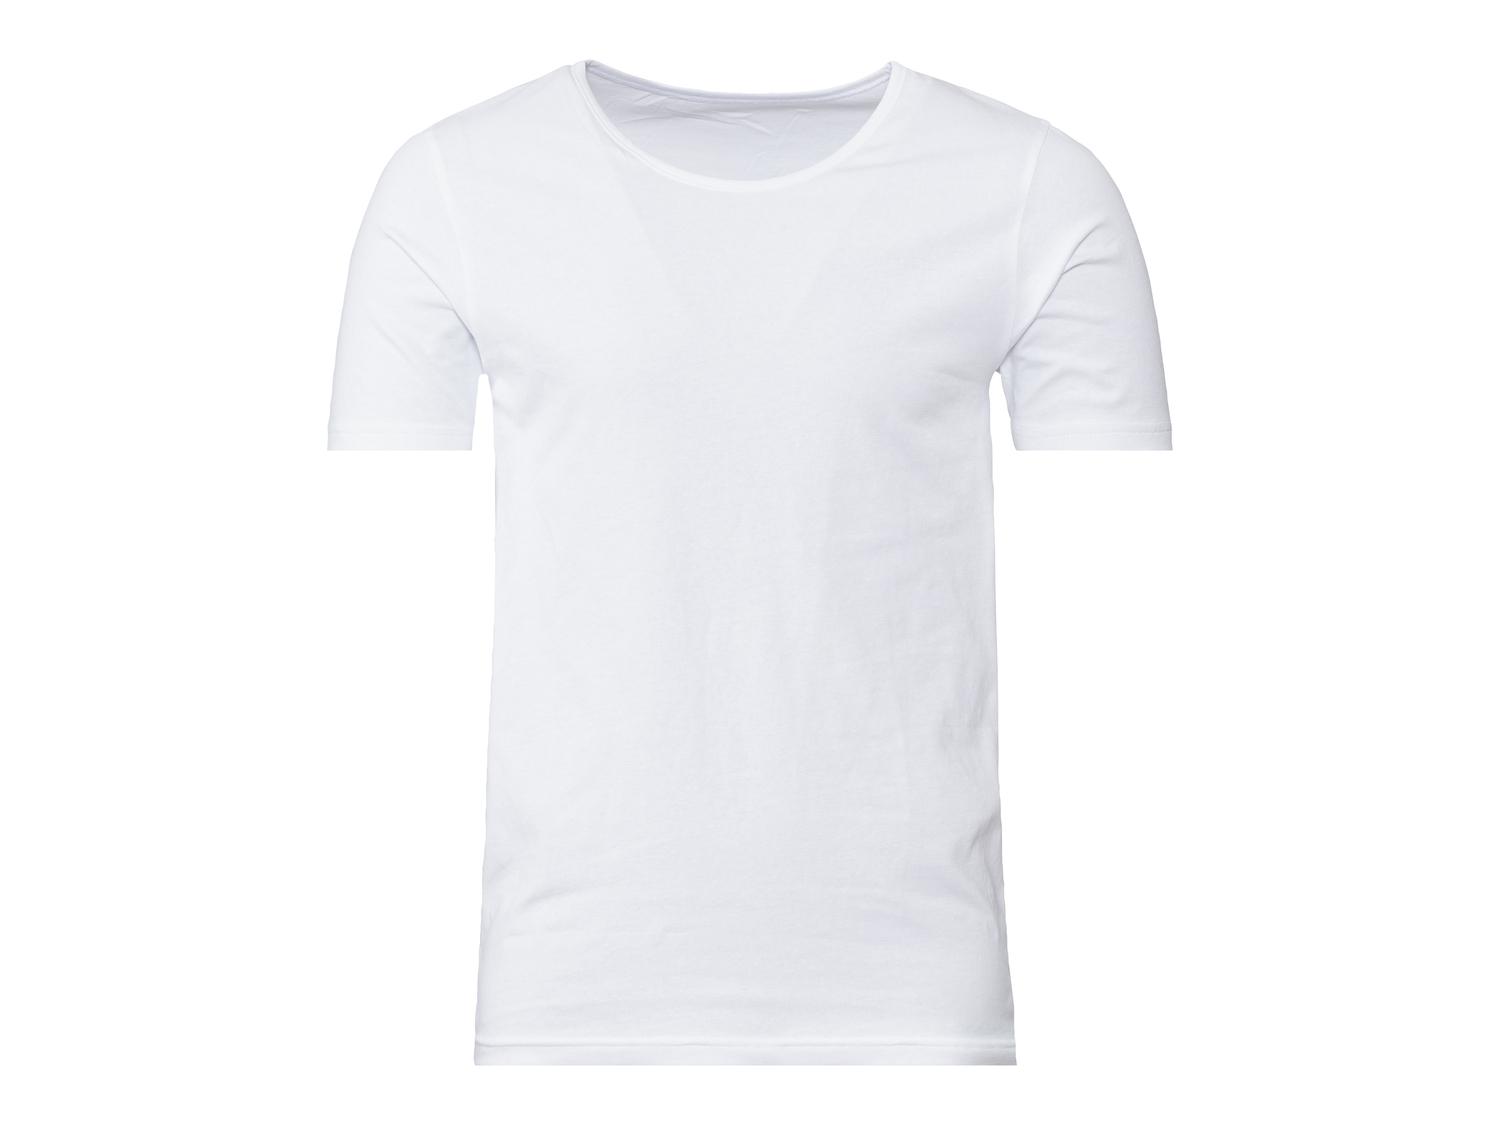 T-shirt intima da uomo Livergy, prezzo 5.99 &#8364; 
Misure: M-XL 
- Con cotone ...